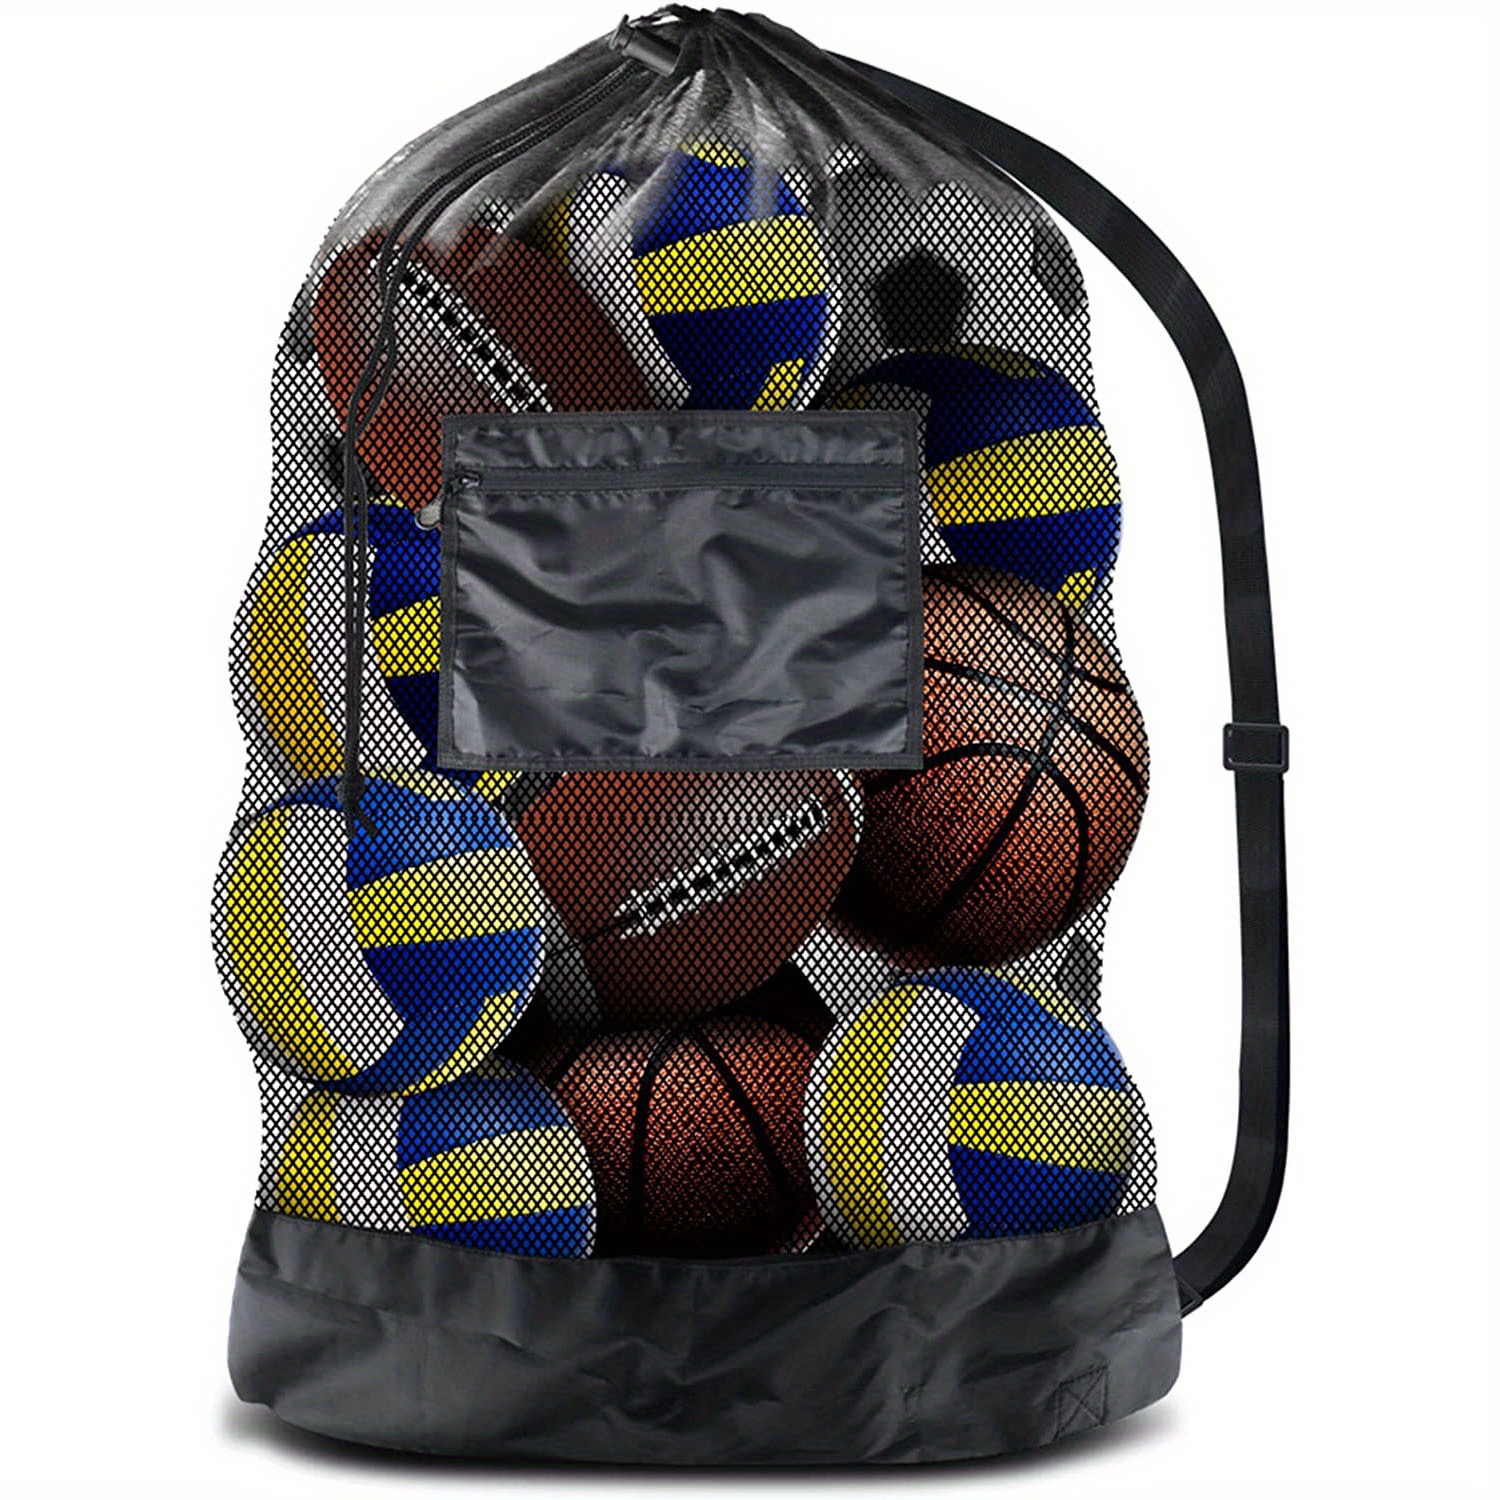 Basketball Gear & Equipment